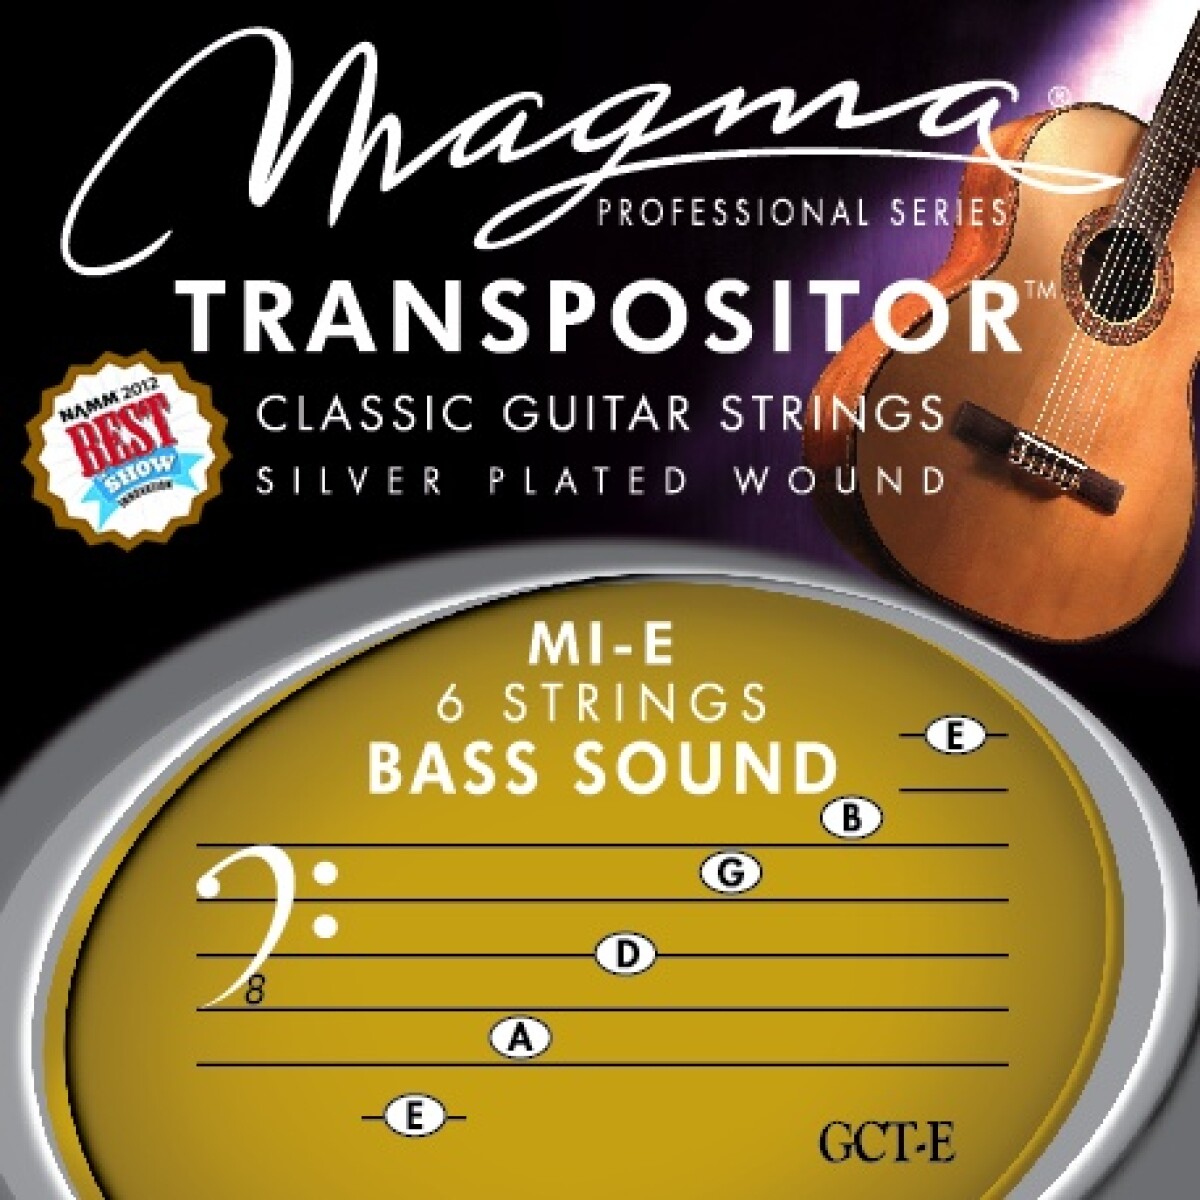 Encordado Clásica Transpositor Magma Bass Sound Mi-e GCT-E 